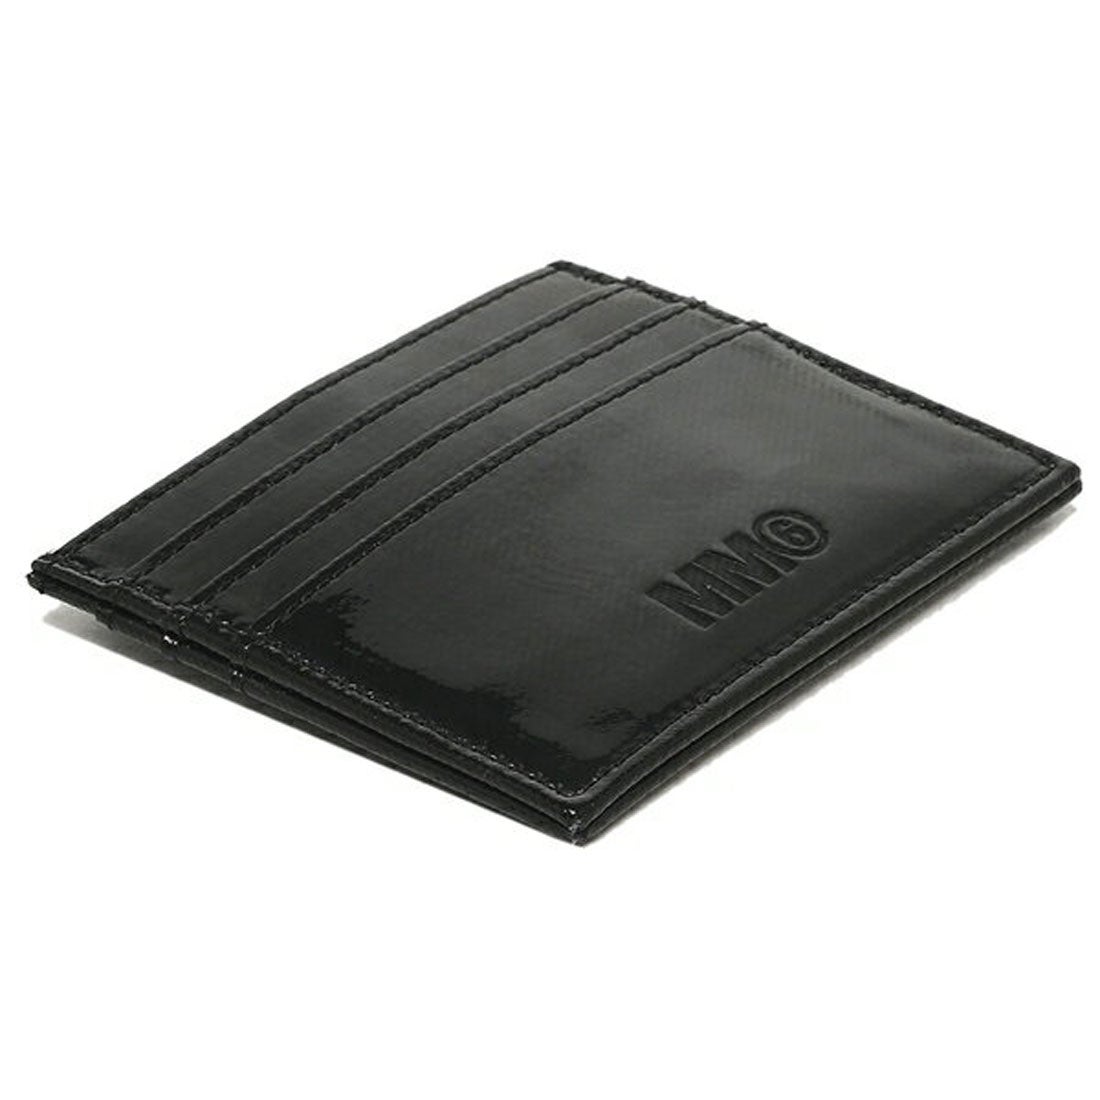 【新品未使用】MM6 メゾンマルジェラ カードケース パスケース ブラック